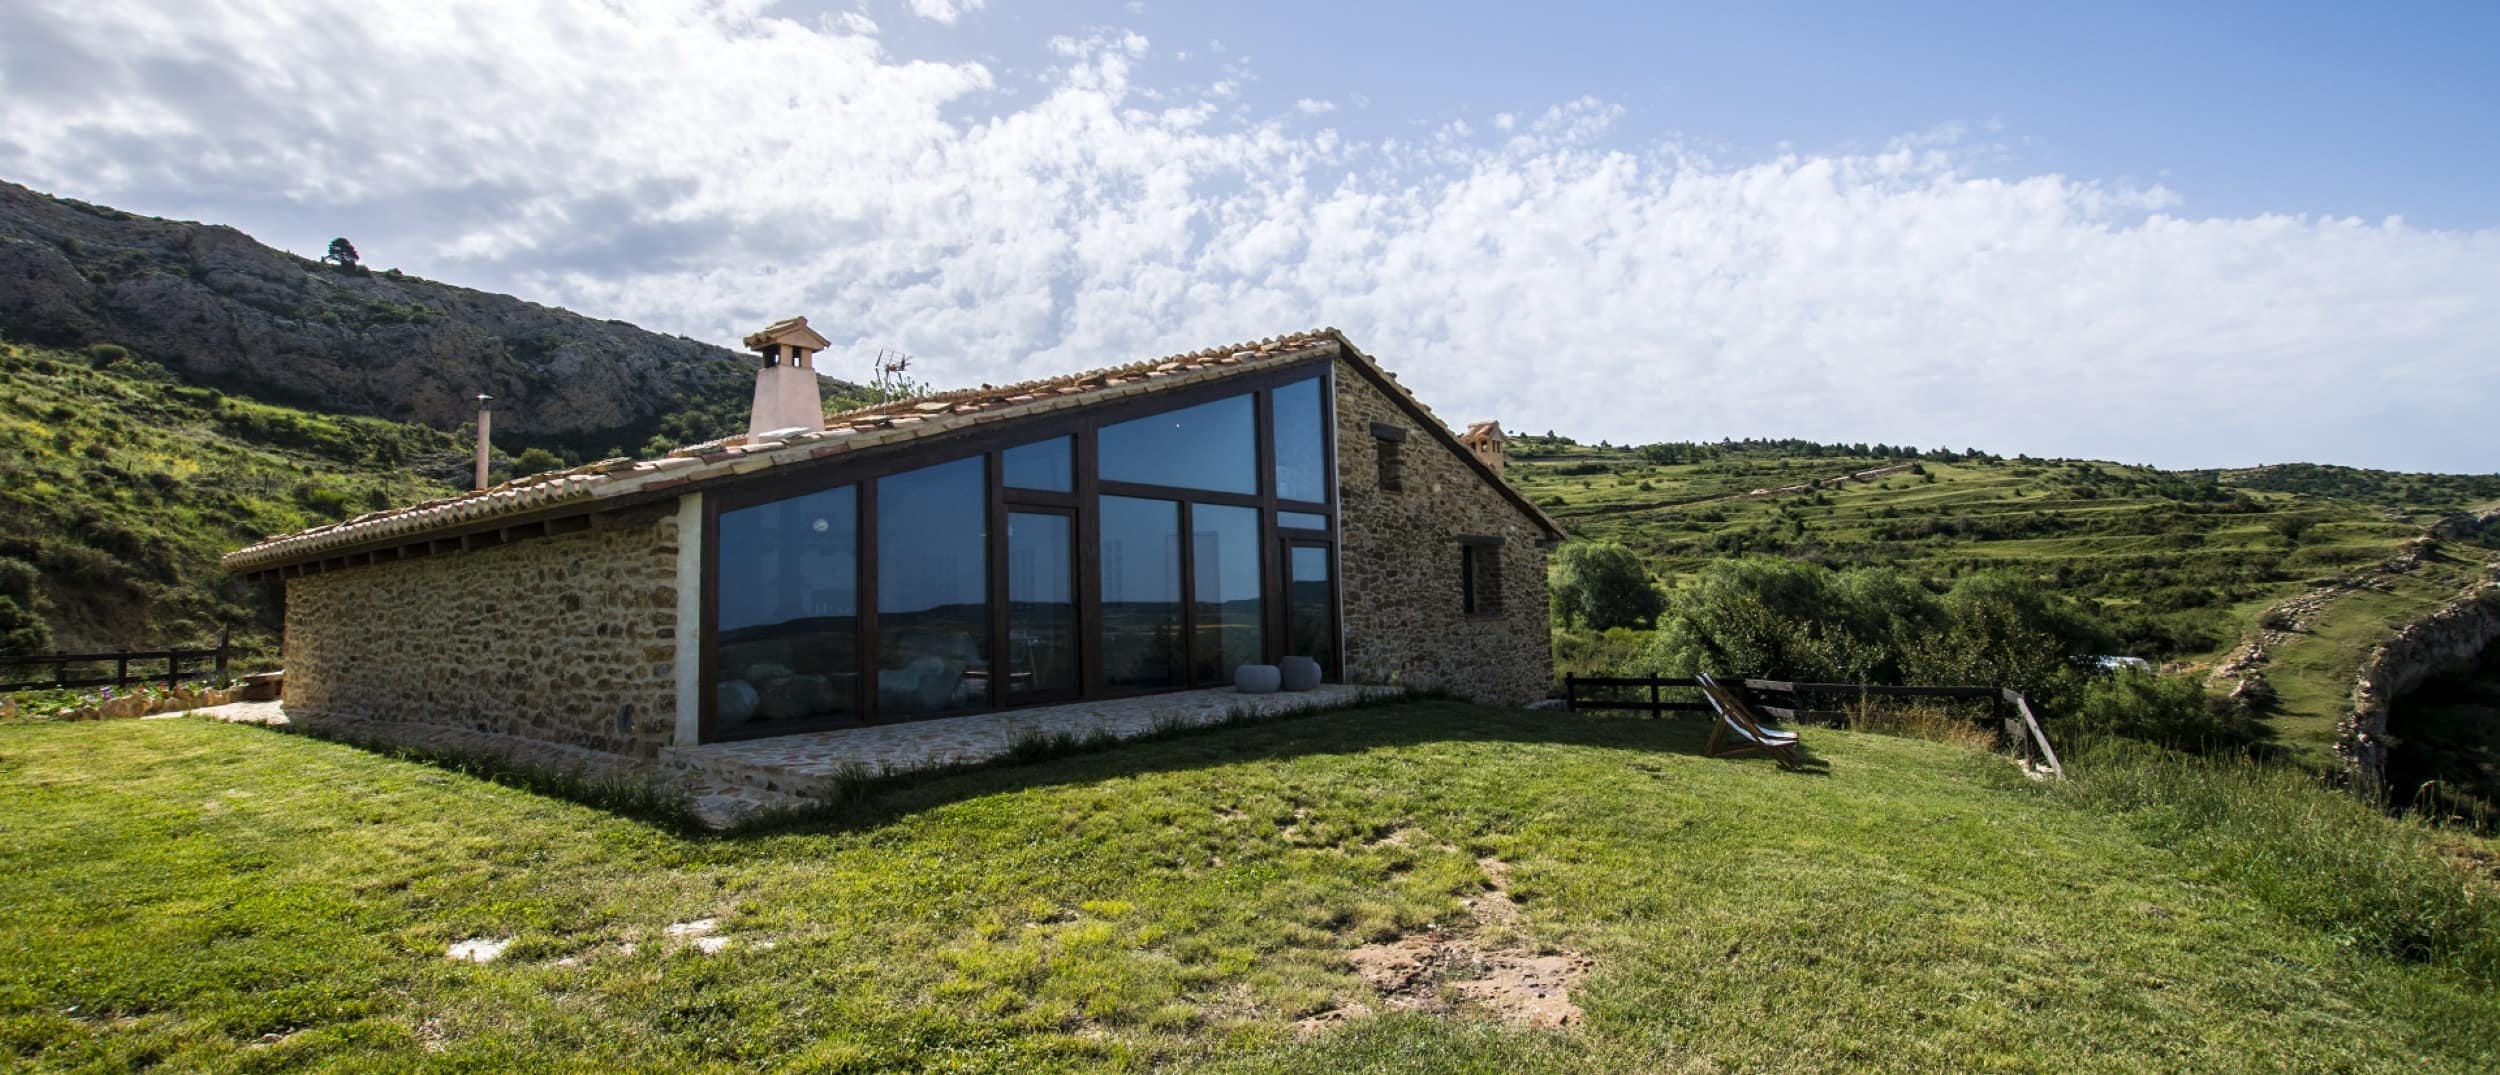 Vive la arquitectura mudéjar con una casa rural en Teruel